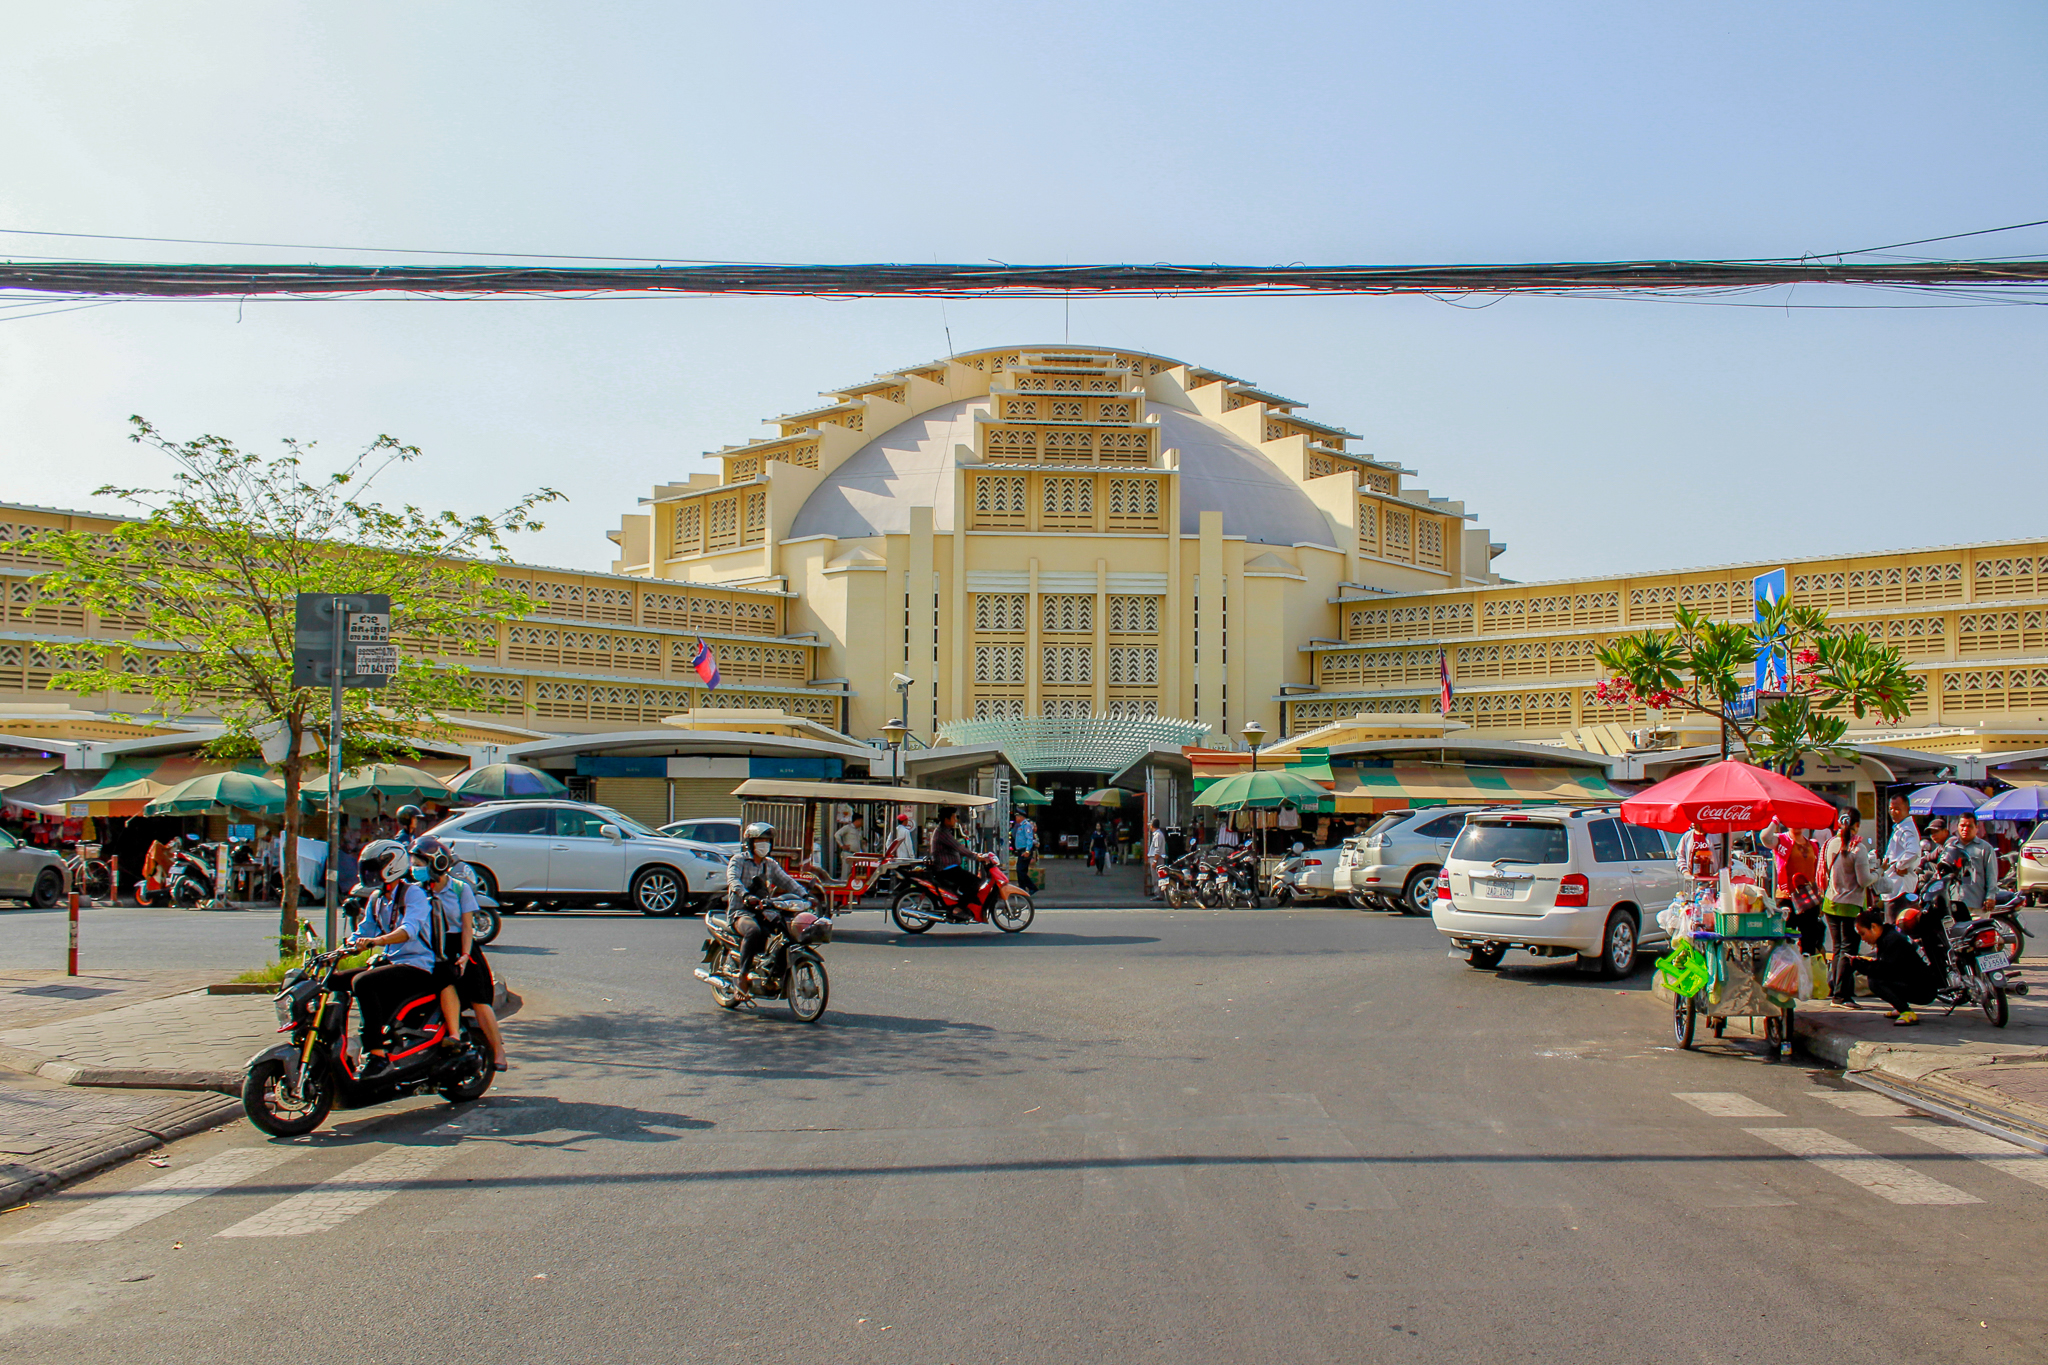 Market in Cambodia by zeezeeeee